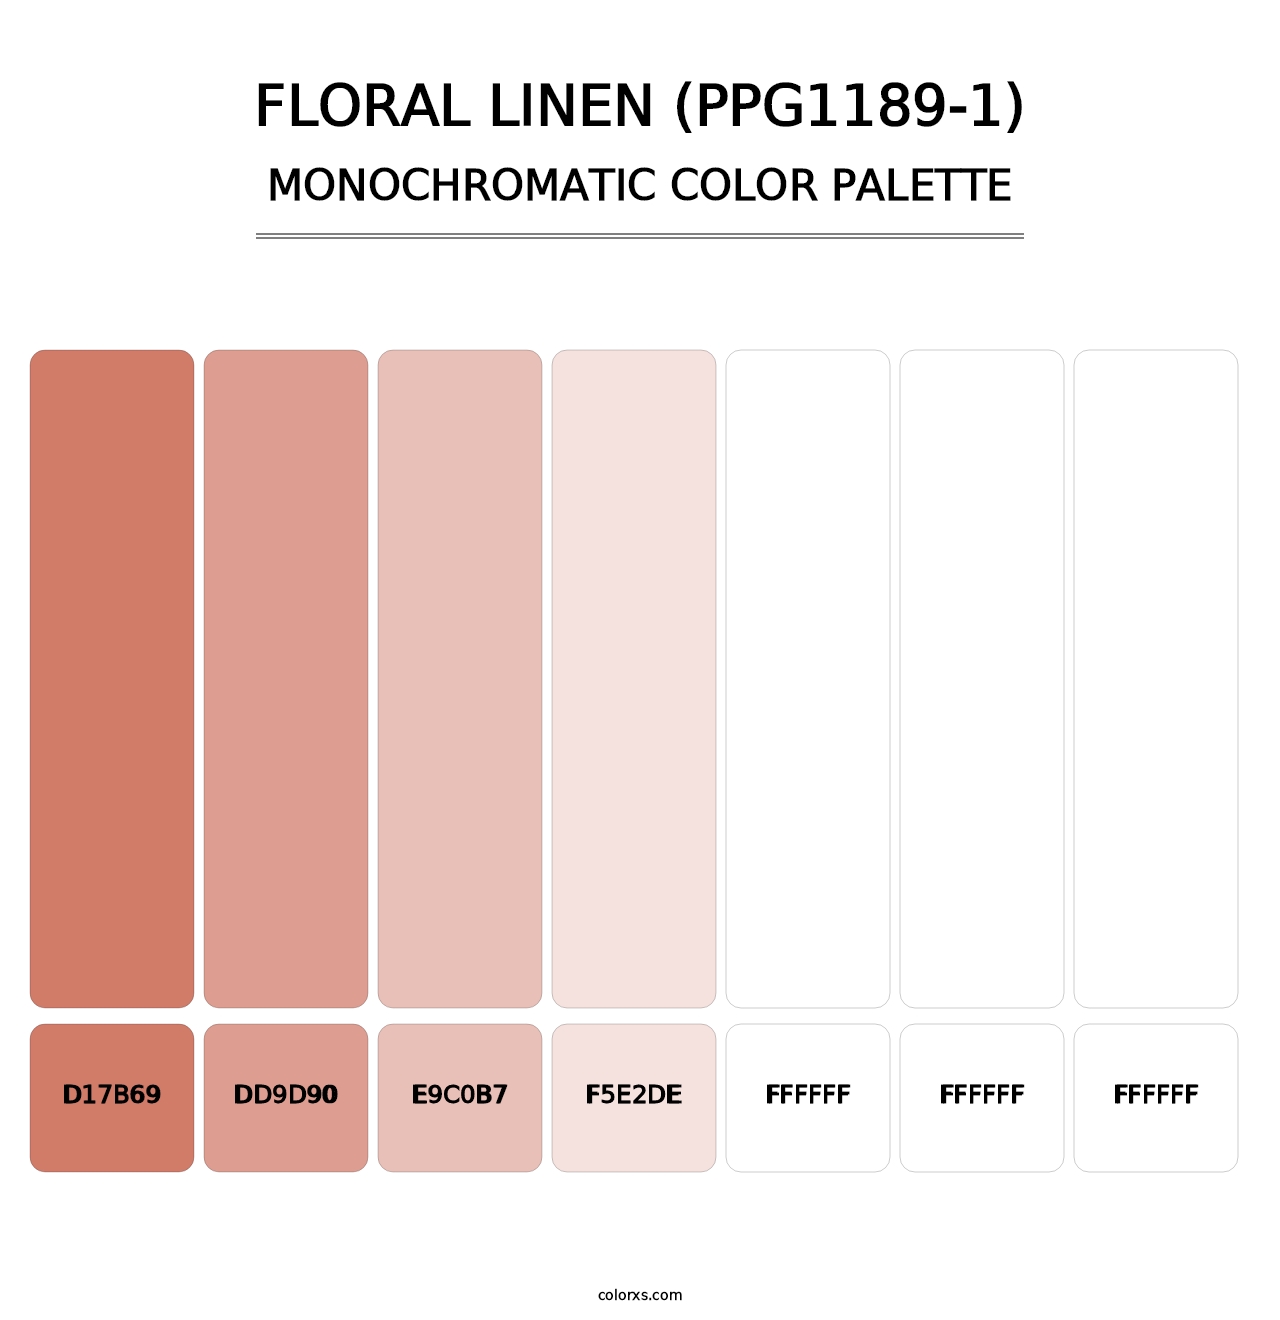 Floral Linen (PPG1189-1) - Monochromatic Color Palette